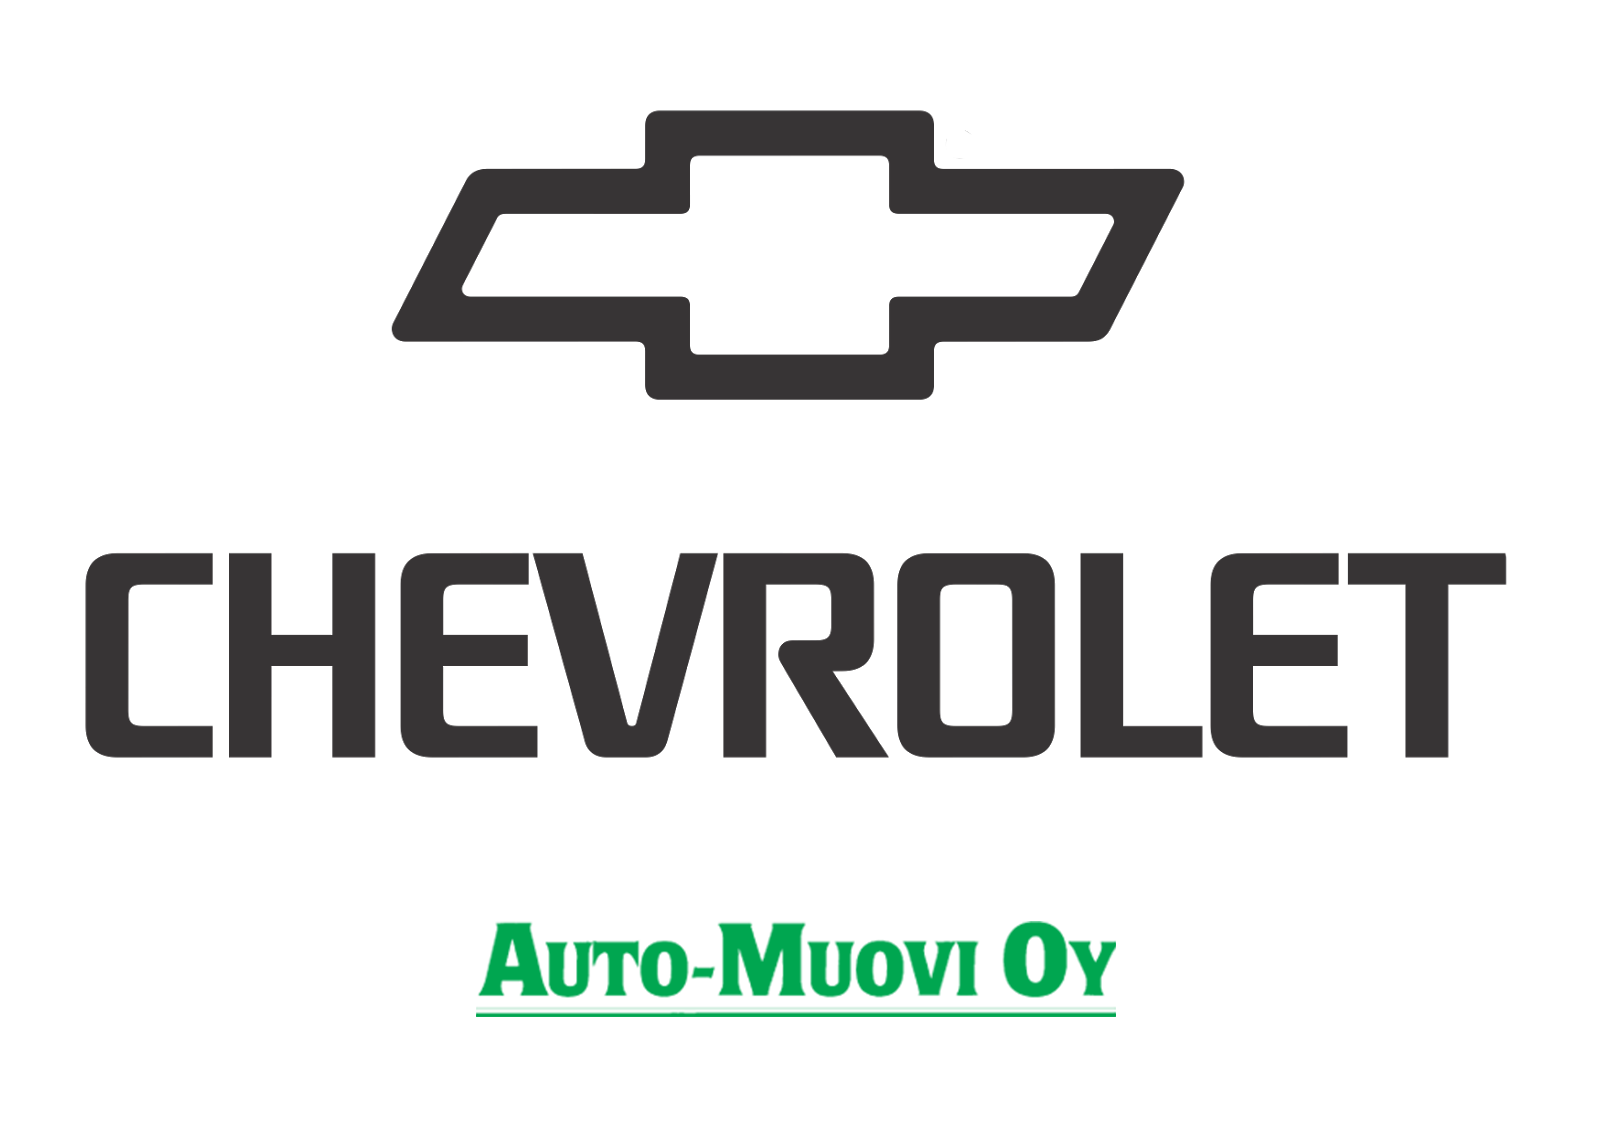 chevrolet logo2